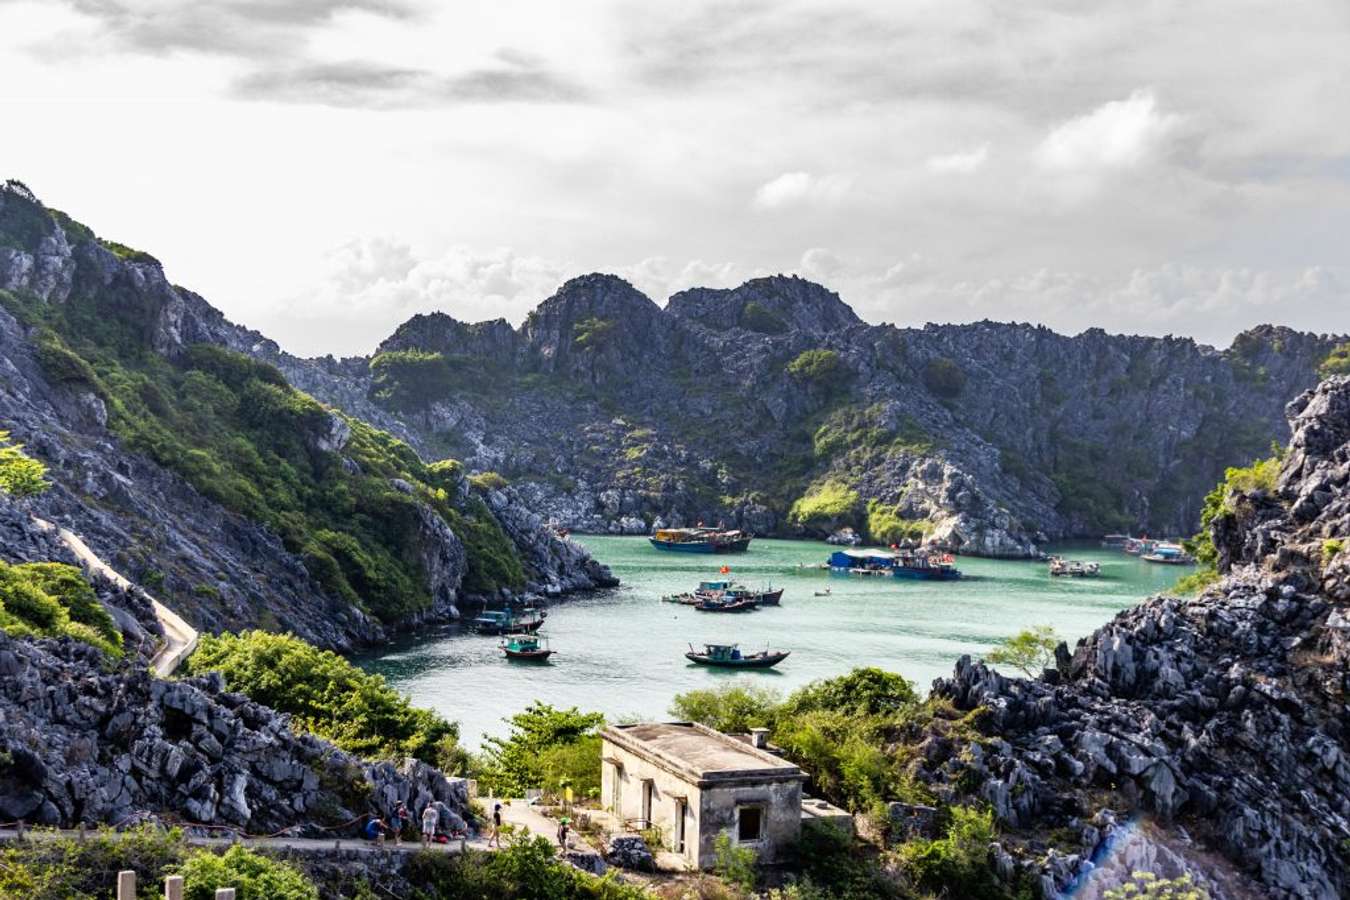 Đảo Long Châu - Tiền đồn canh trấn cửa biển Hải Phòng nổi tiếng